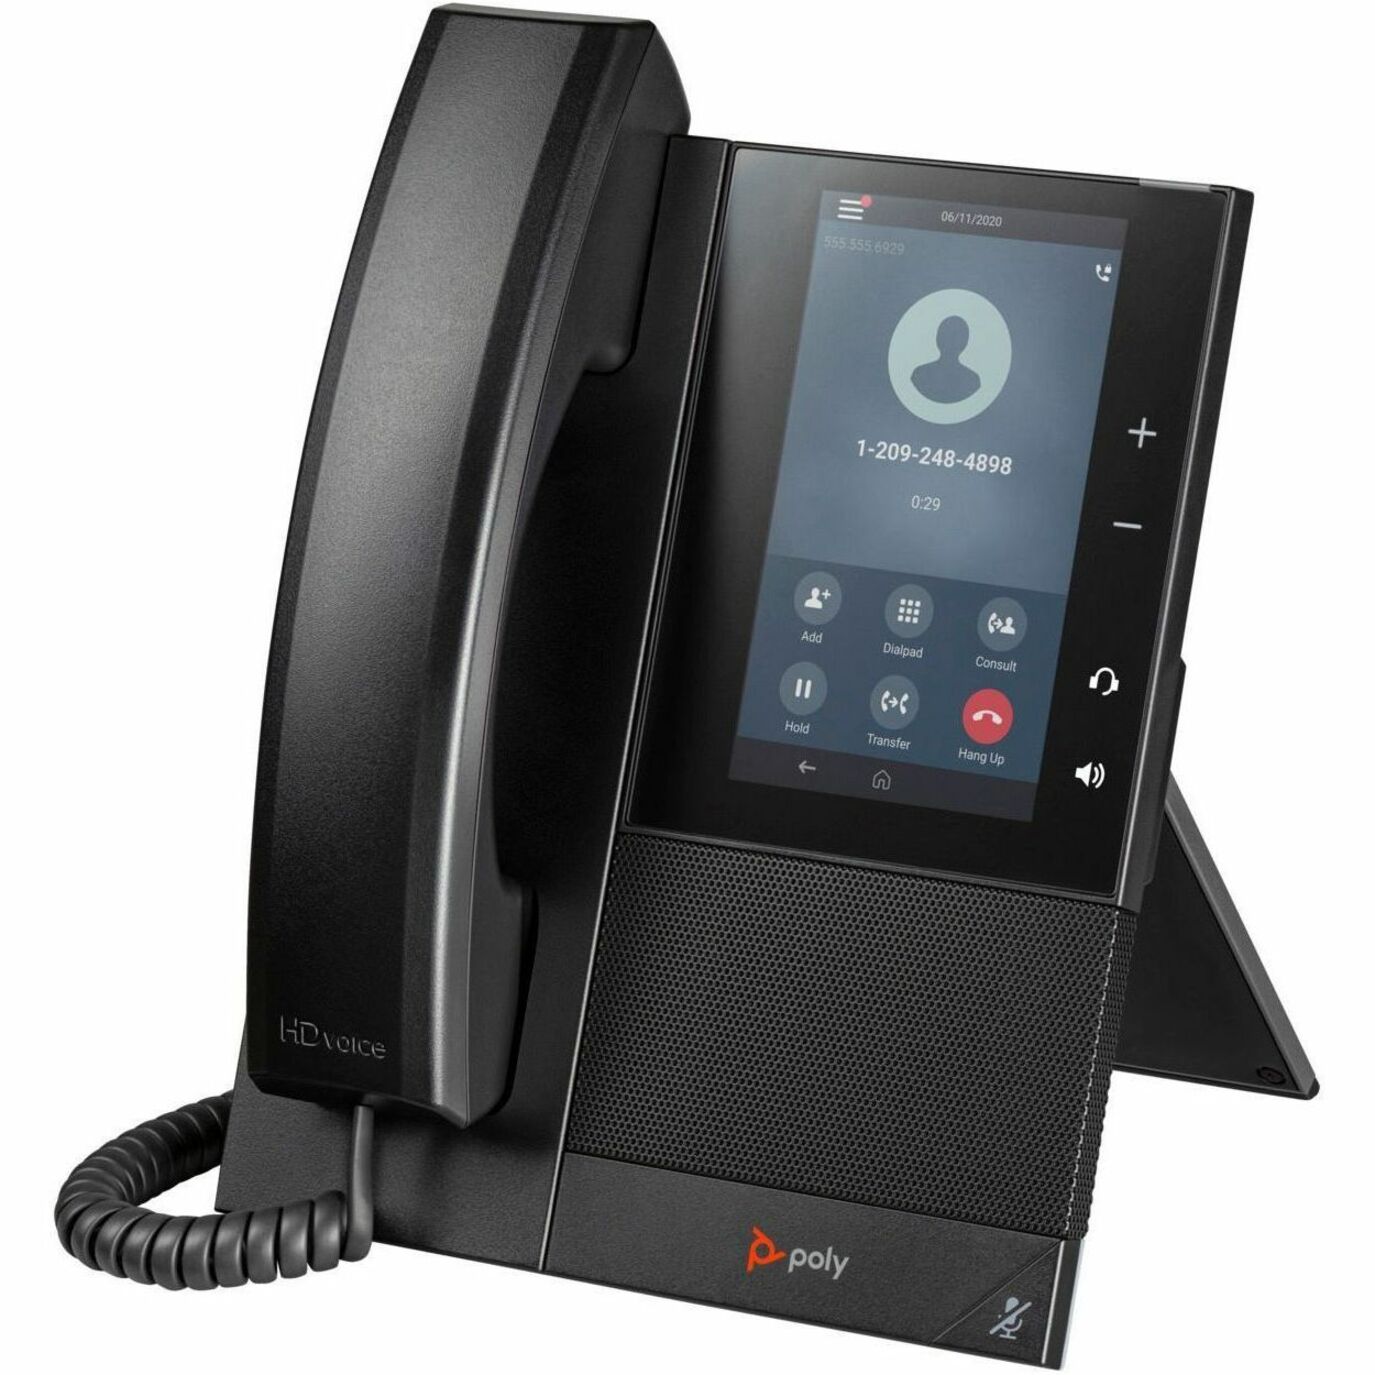 Poly 82Z78AA CCX 500 Business Media Telefon mit Open SIP und PoE-fähig Anruferkennung Freisprecheinrichtung VoIP